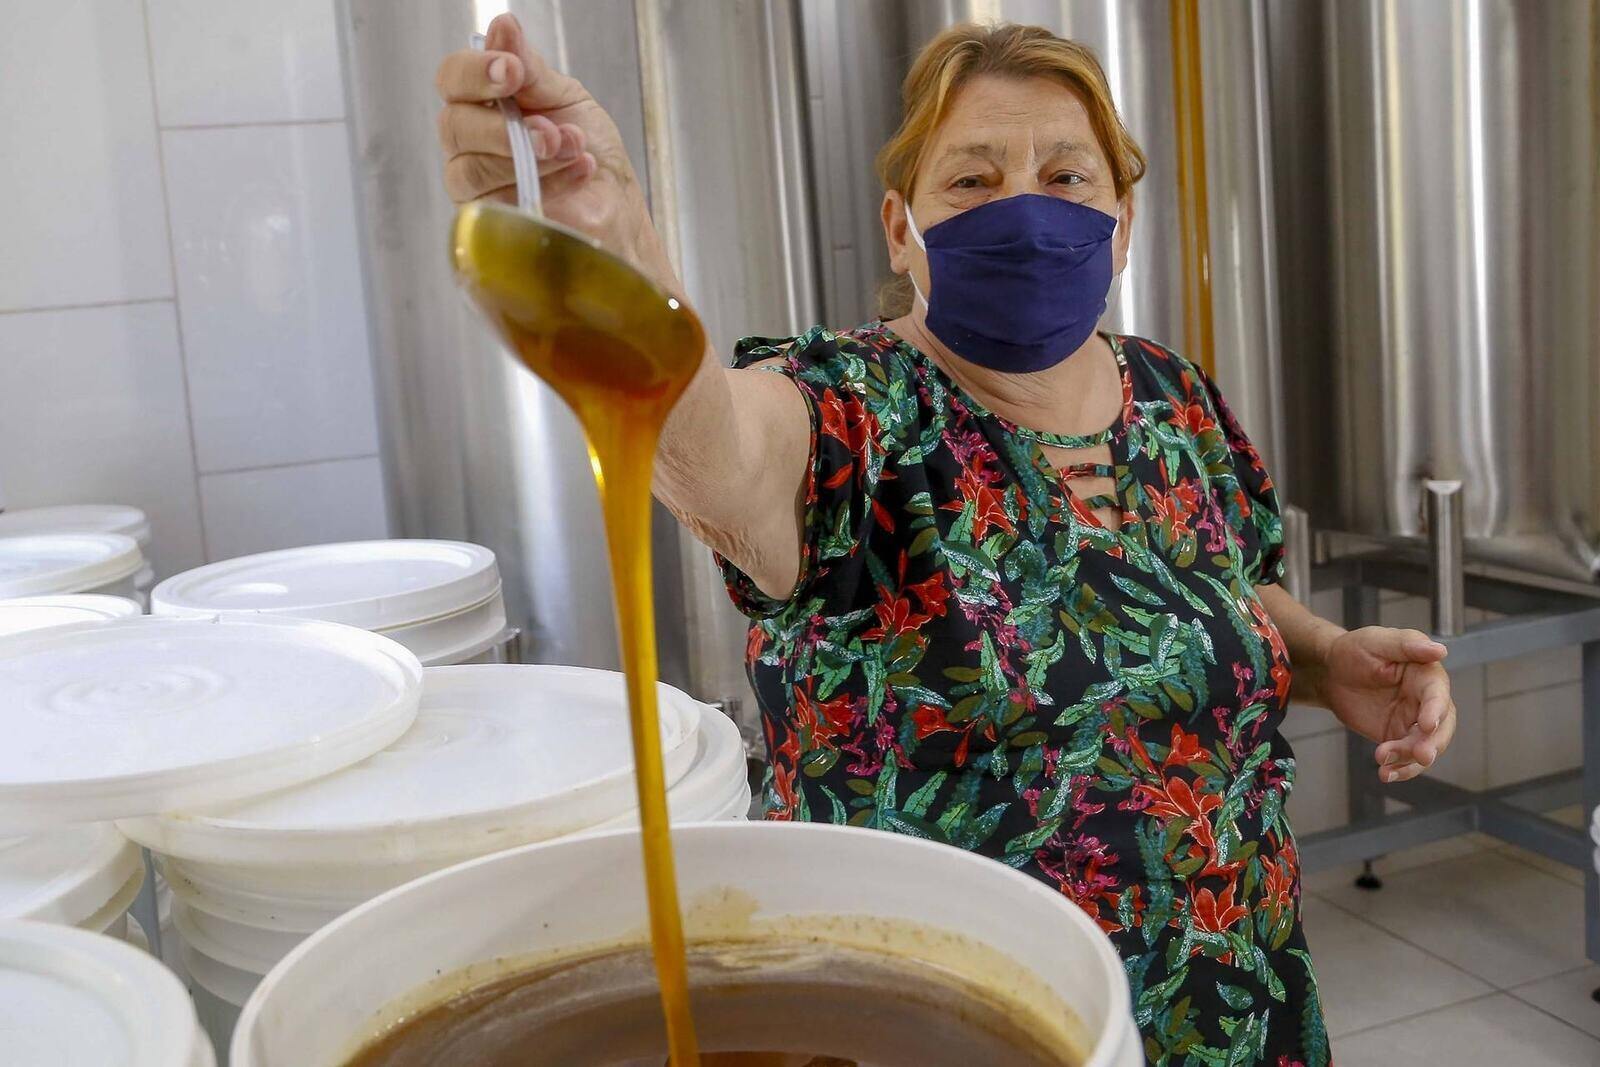 Produção de mel
Ortigueira - Pr
Gilson Abreu/AEN